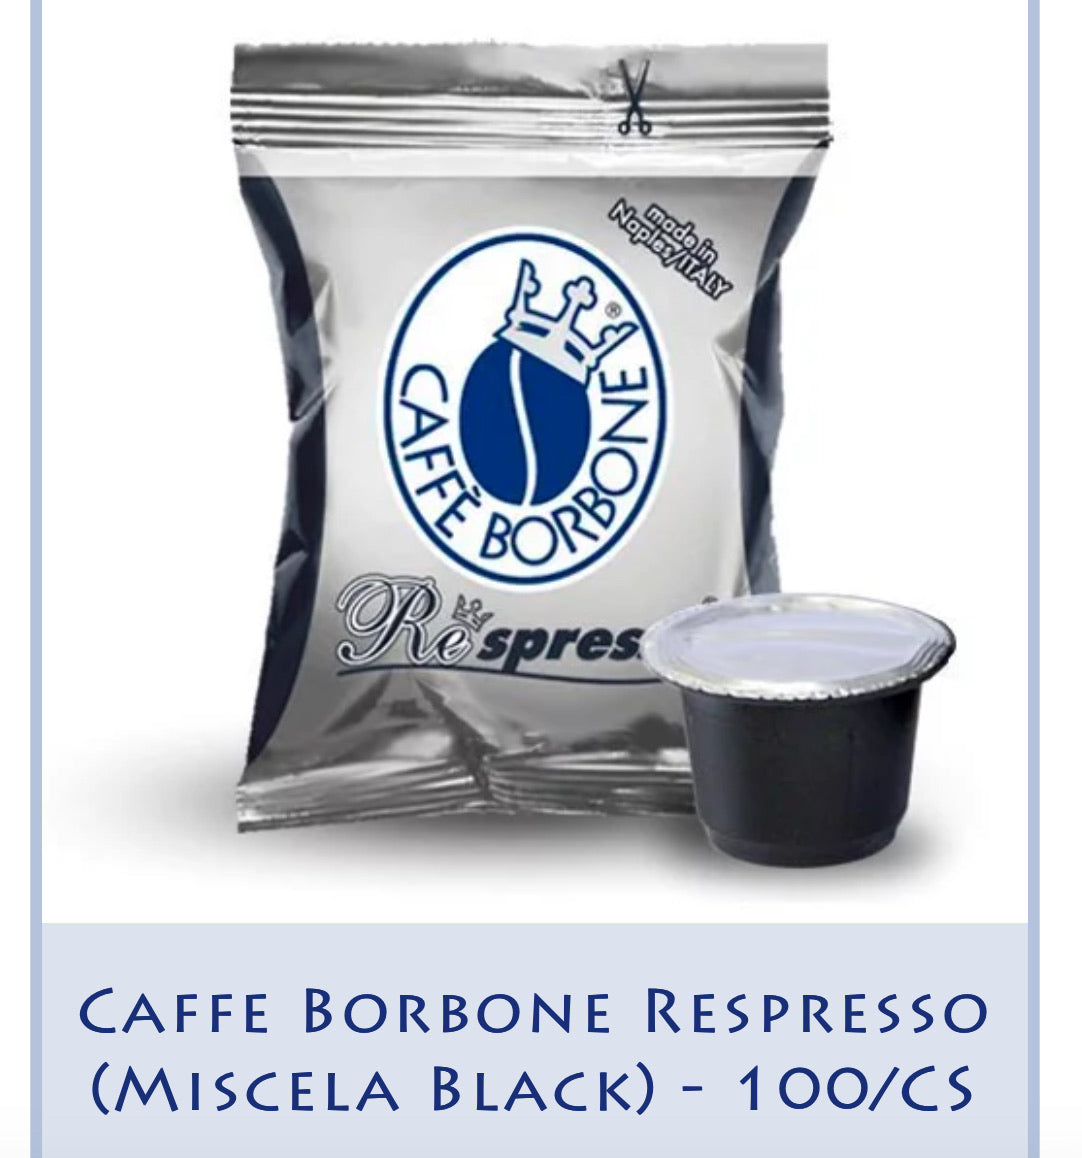 Caffe Borbone Espresso Capsules (Miscela Black) 100/CS